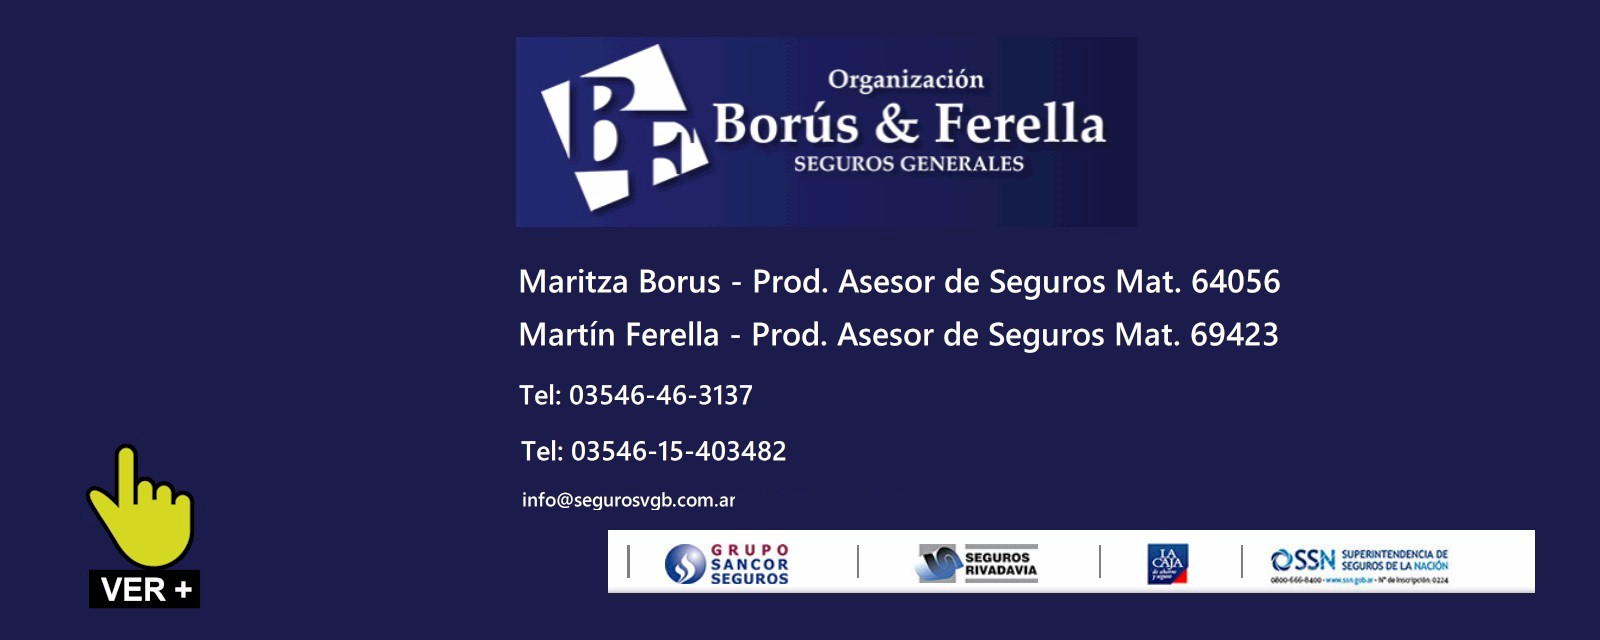 Borus & Ferella